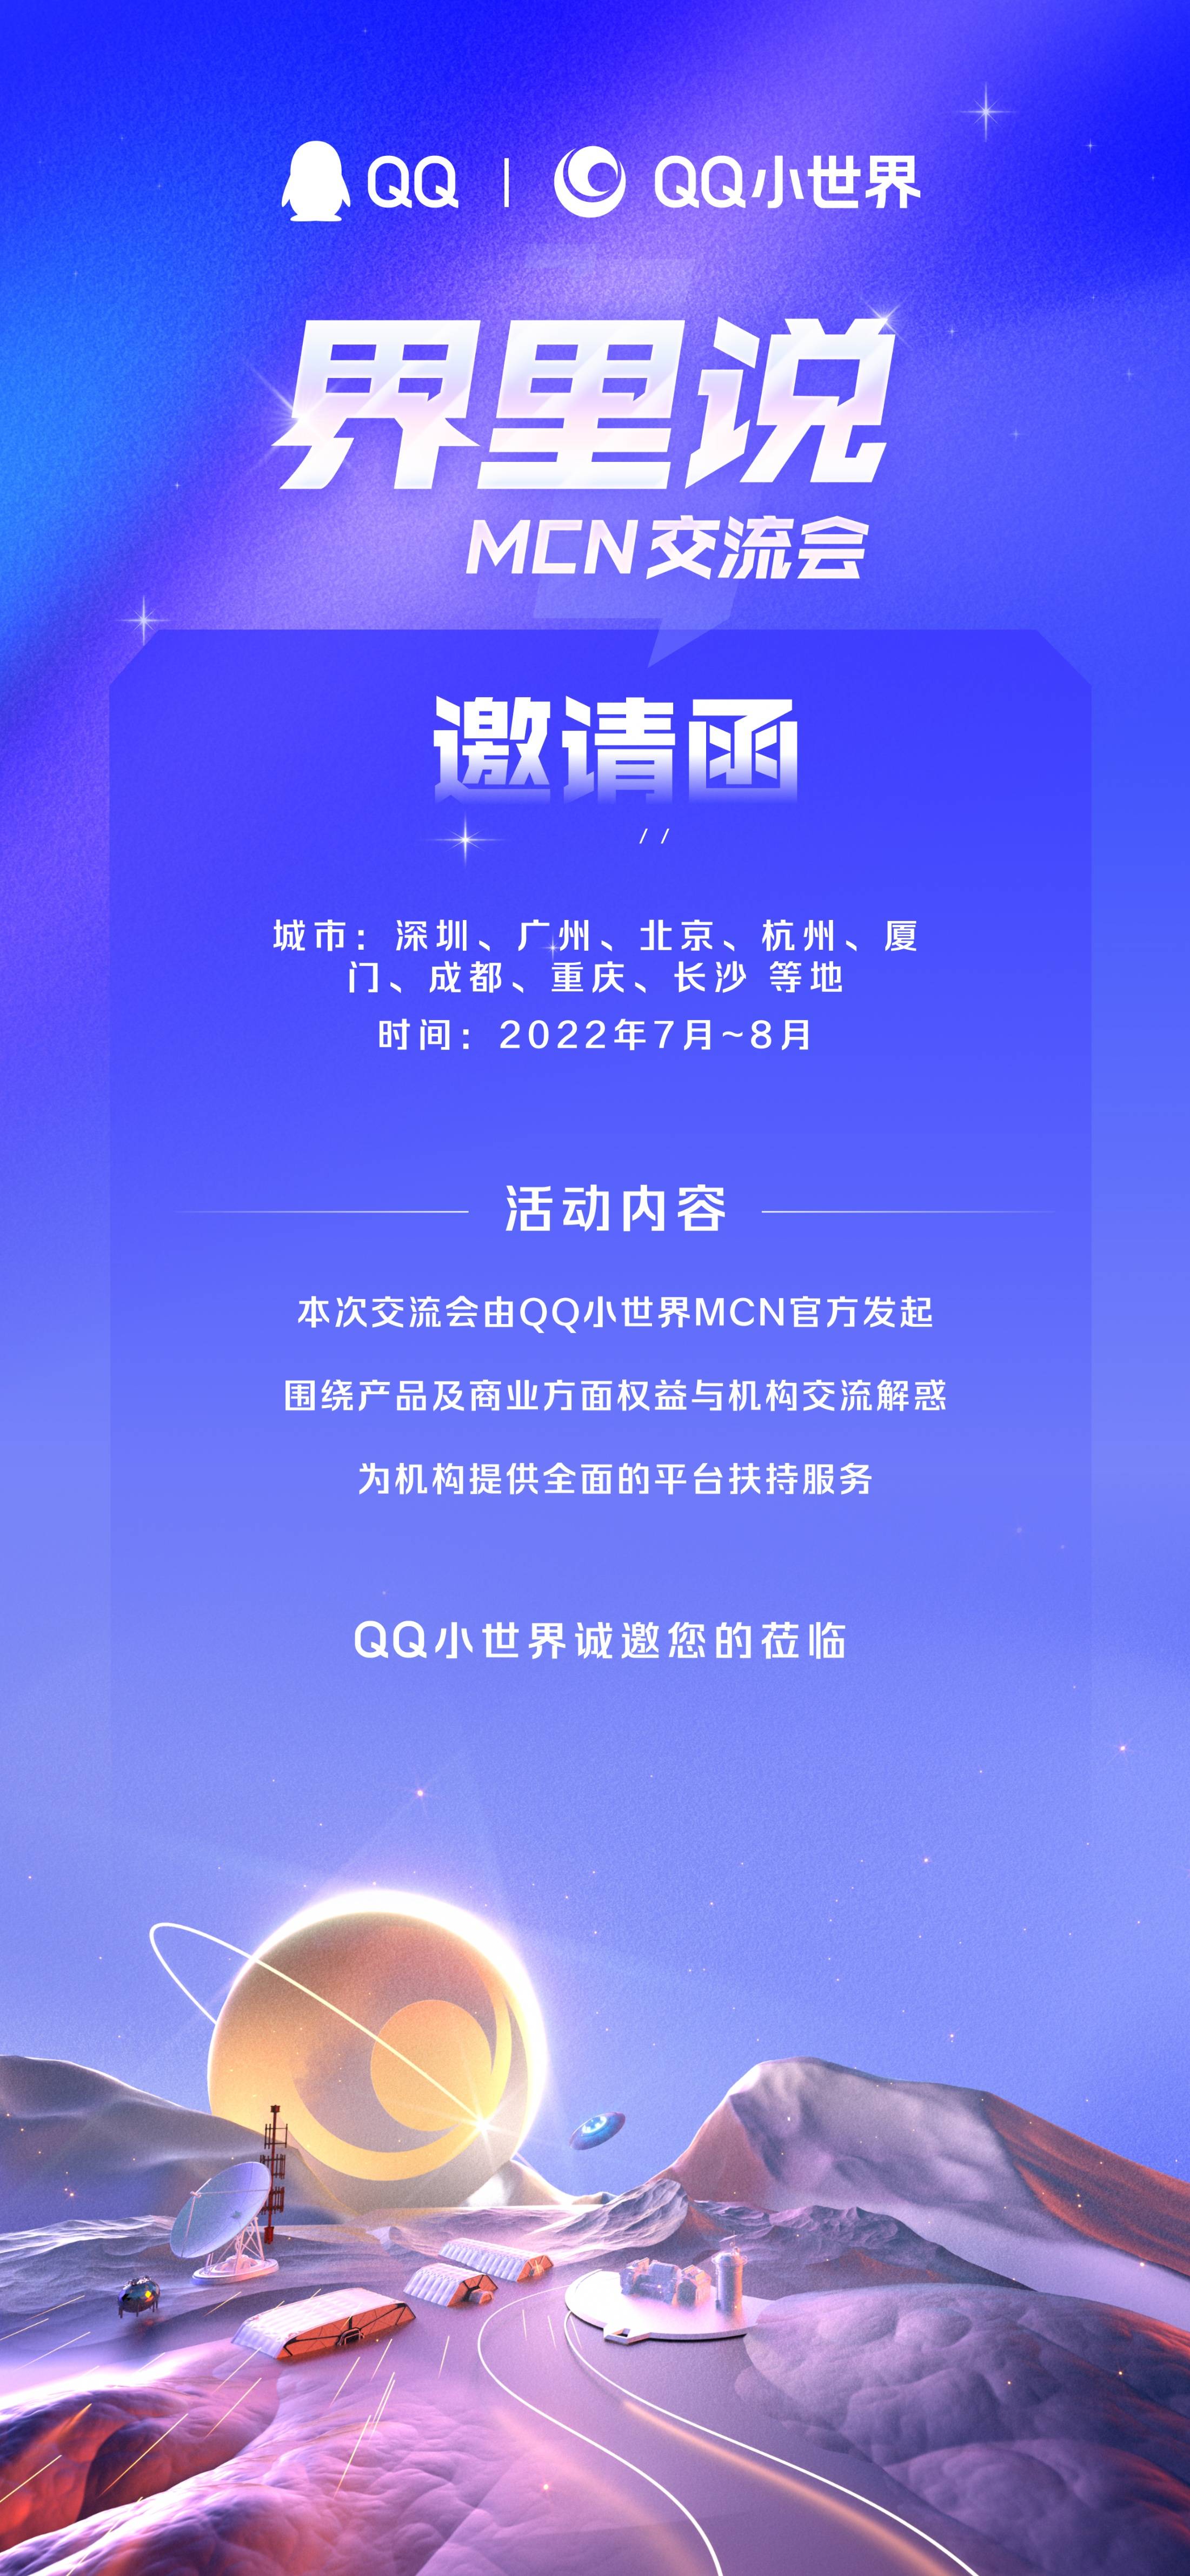 腾讯QQ小世界首届MCN交流会将于2022年7-8月举办